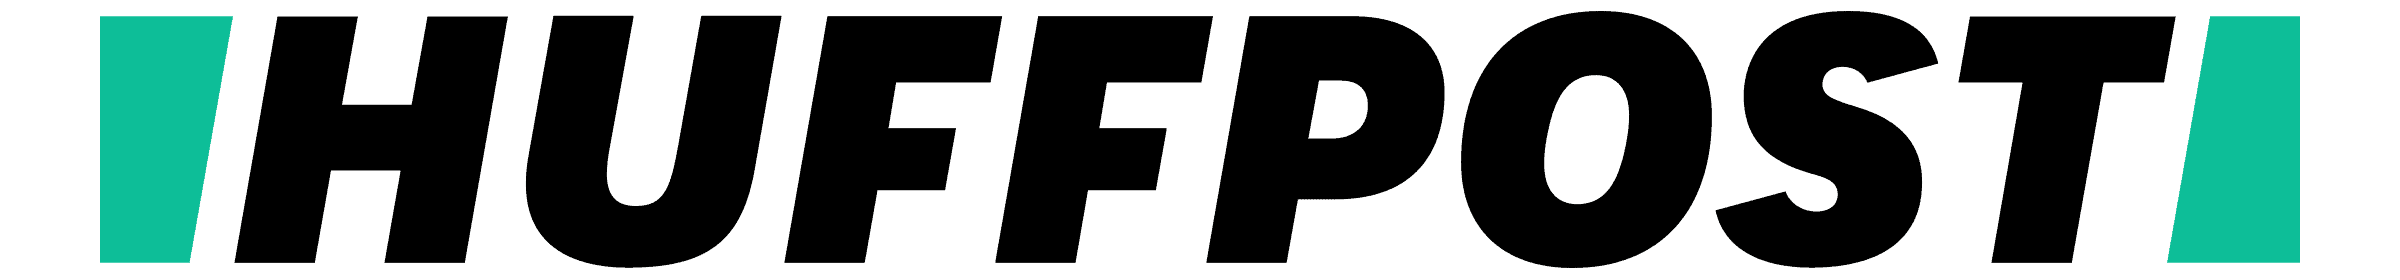 huffpo logo
